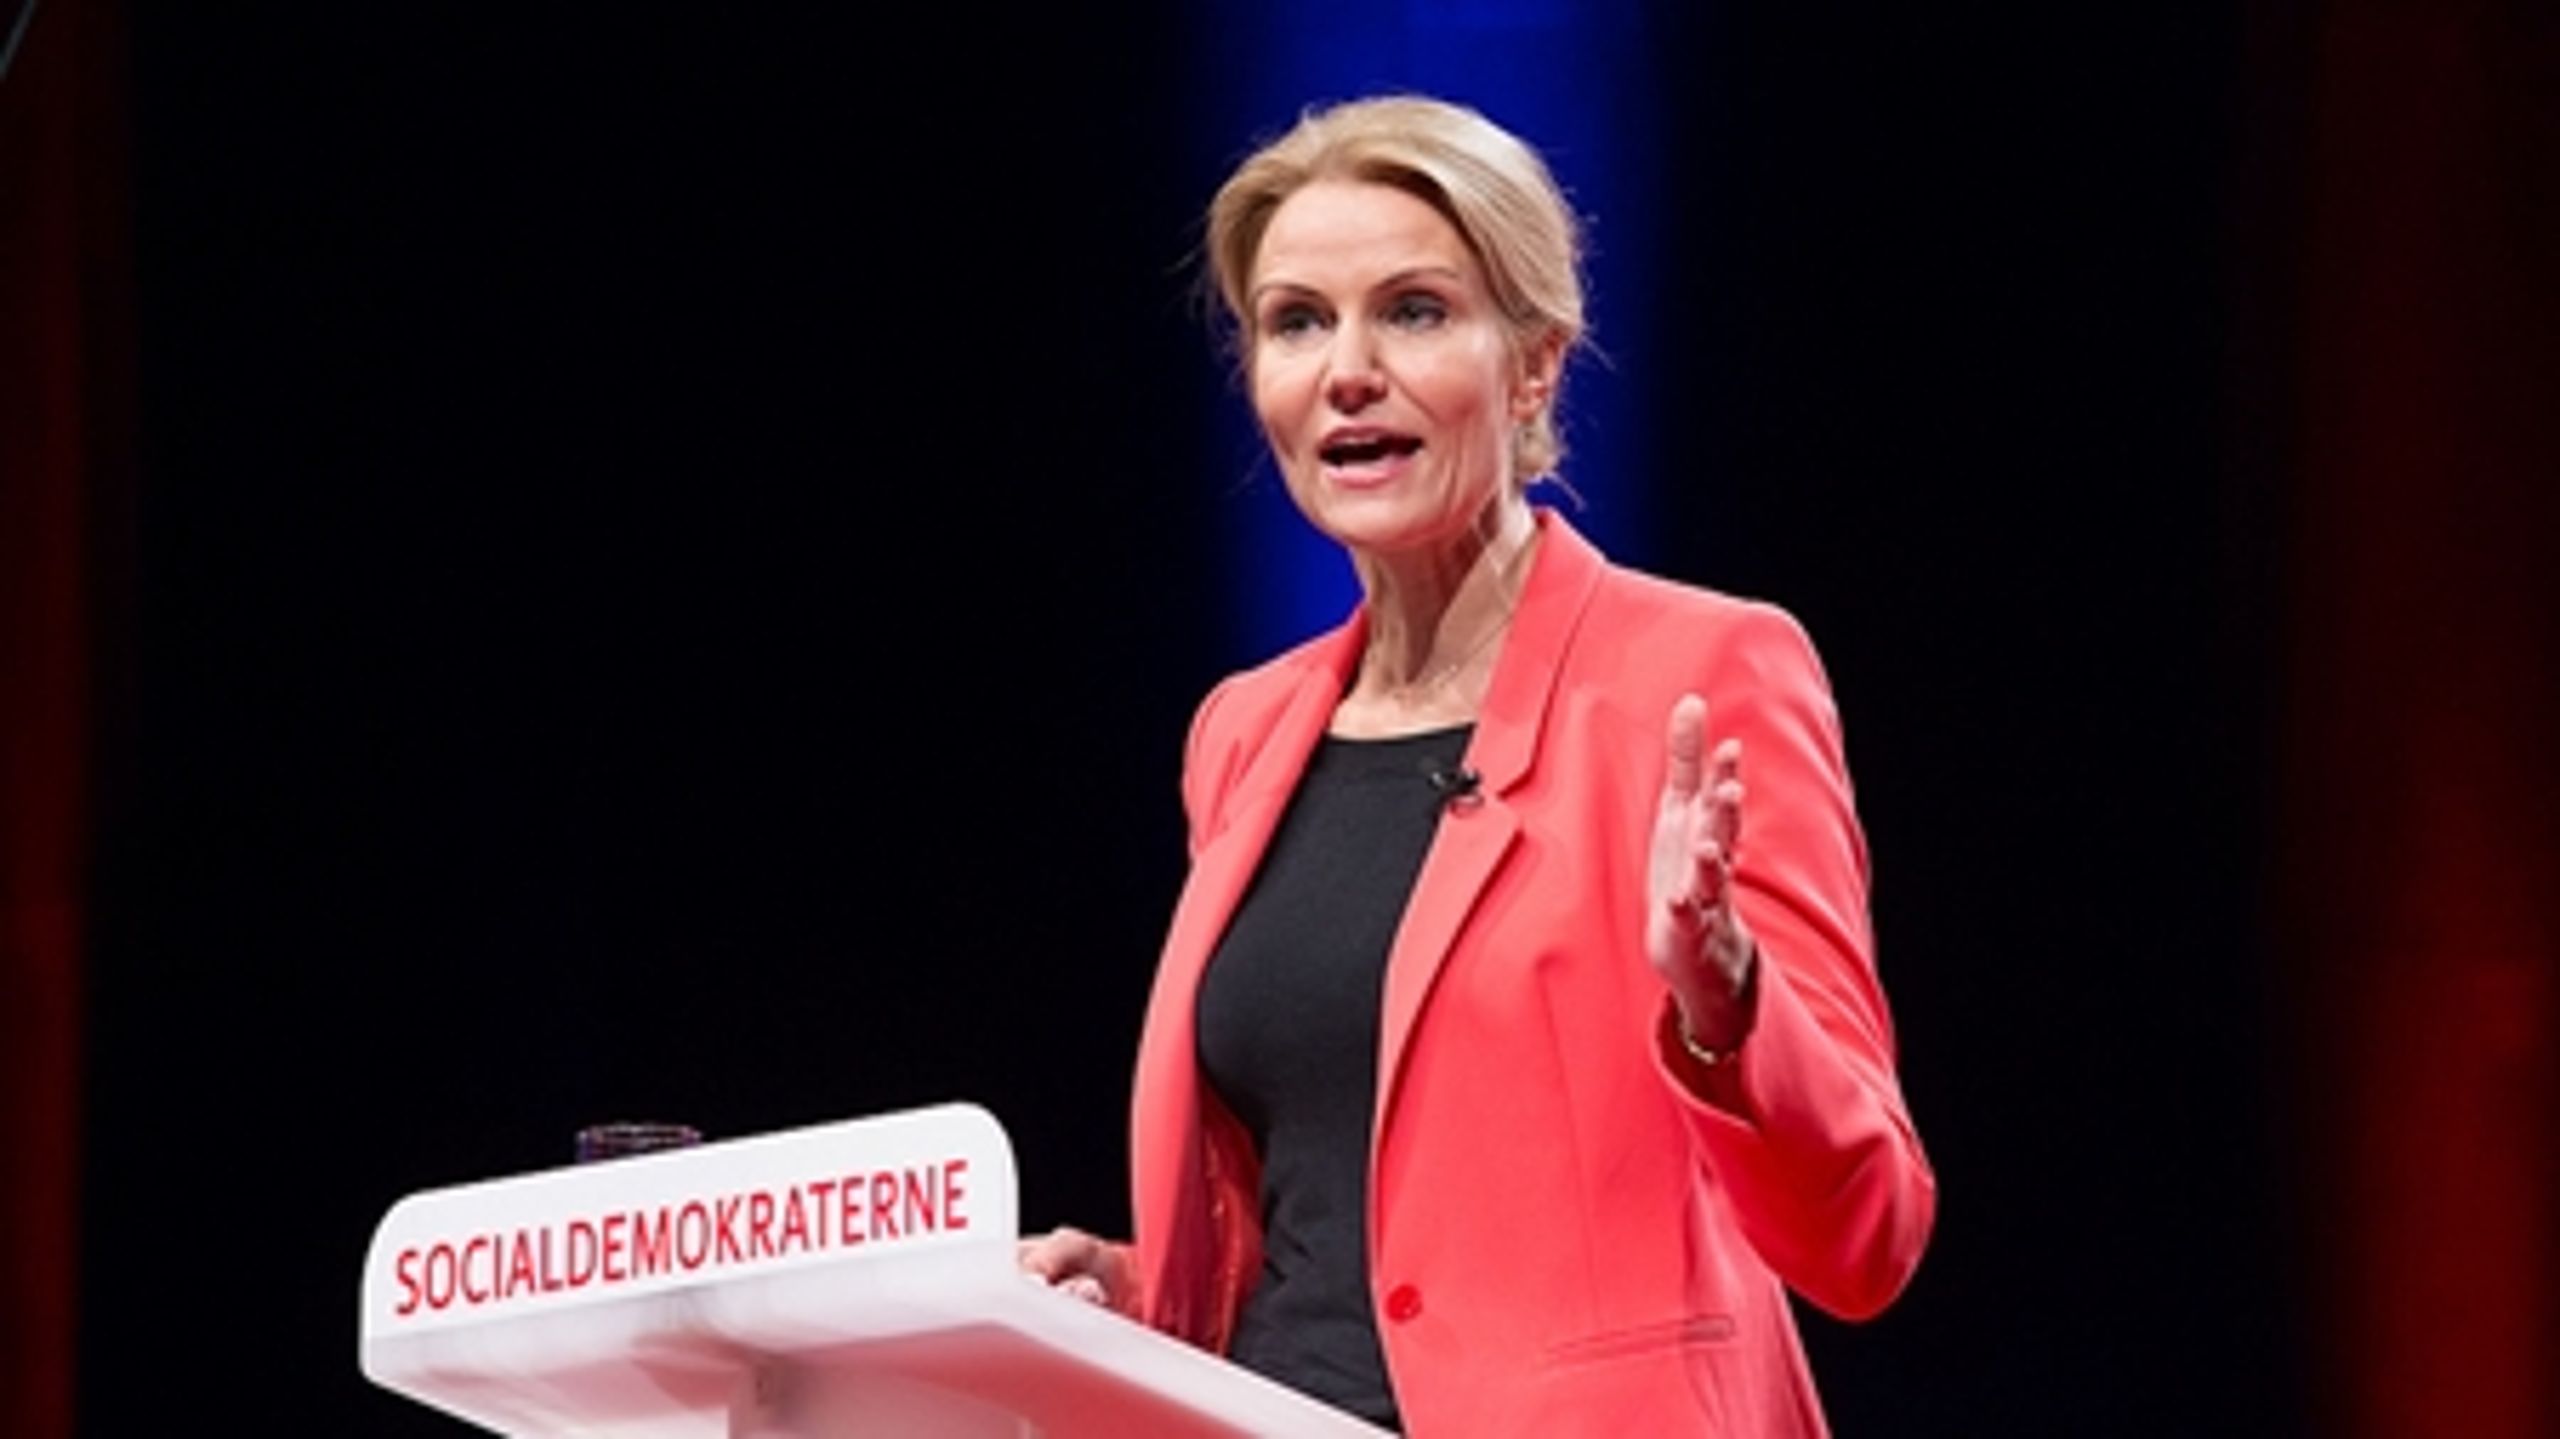 S-formand og statsminister Helle Thorning-Schmidt talte i weekenden til omkring 1.000 tilhørere i Aalborg Kongres og Kultur Center til Socialdemokraternes partikongres.